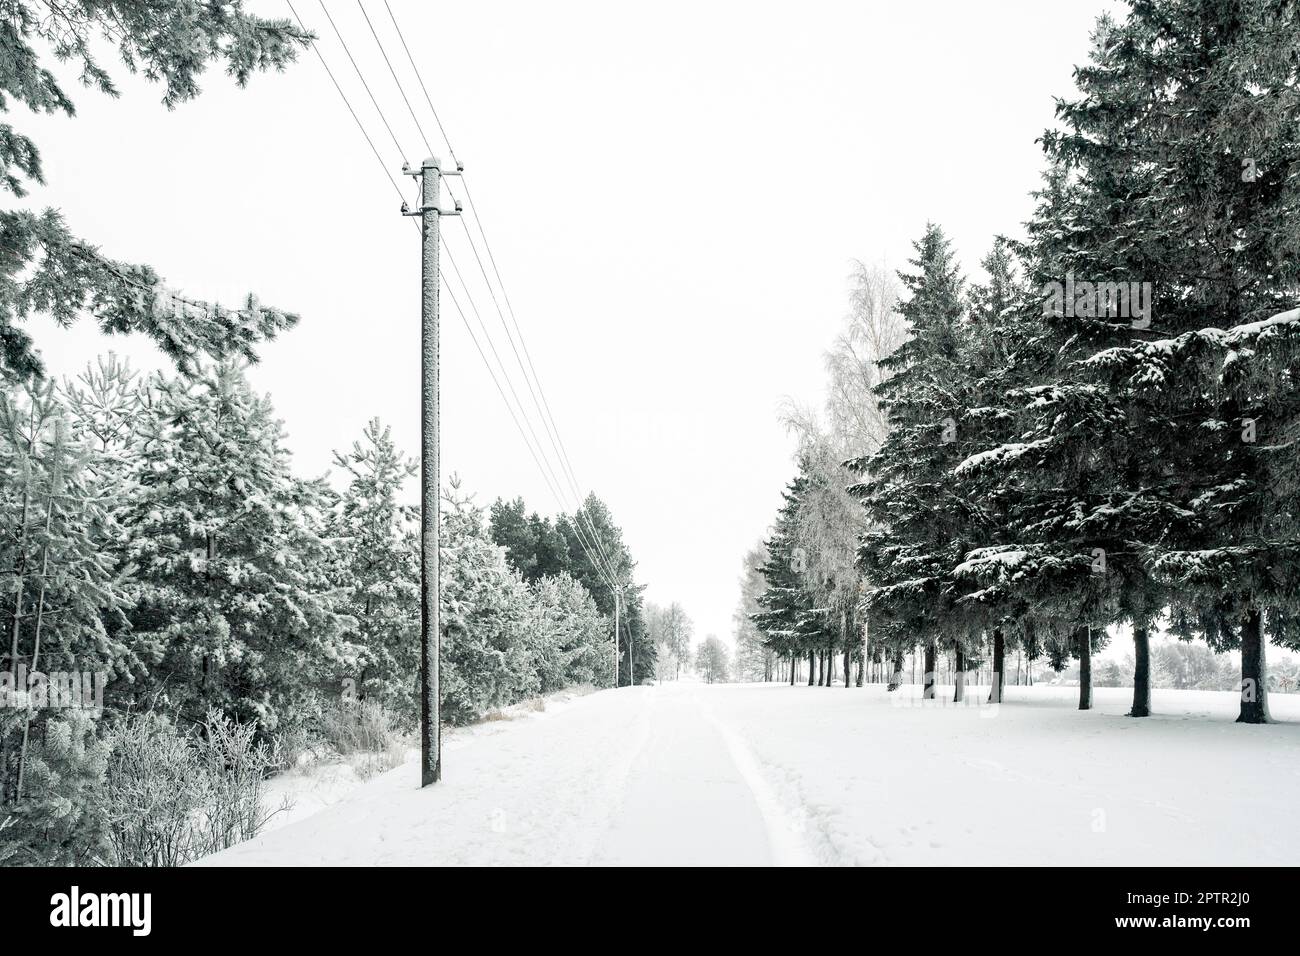 Linee elettriche nella foresta invernale nebbiosa con alberi smerigliati Foto Stock